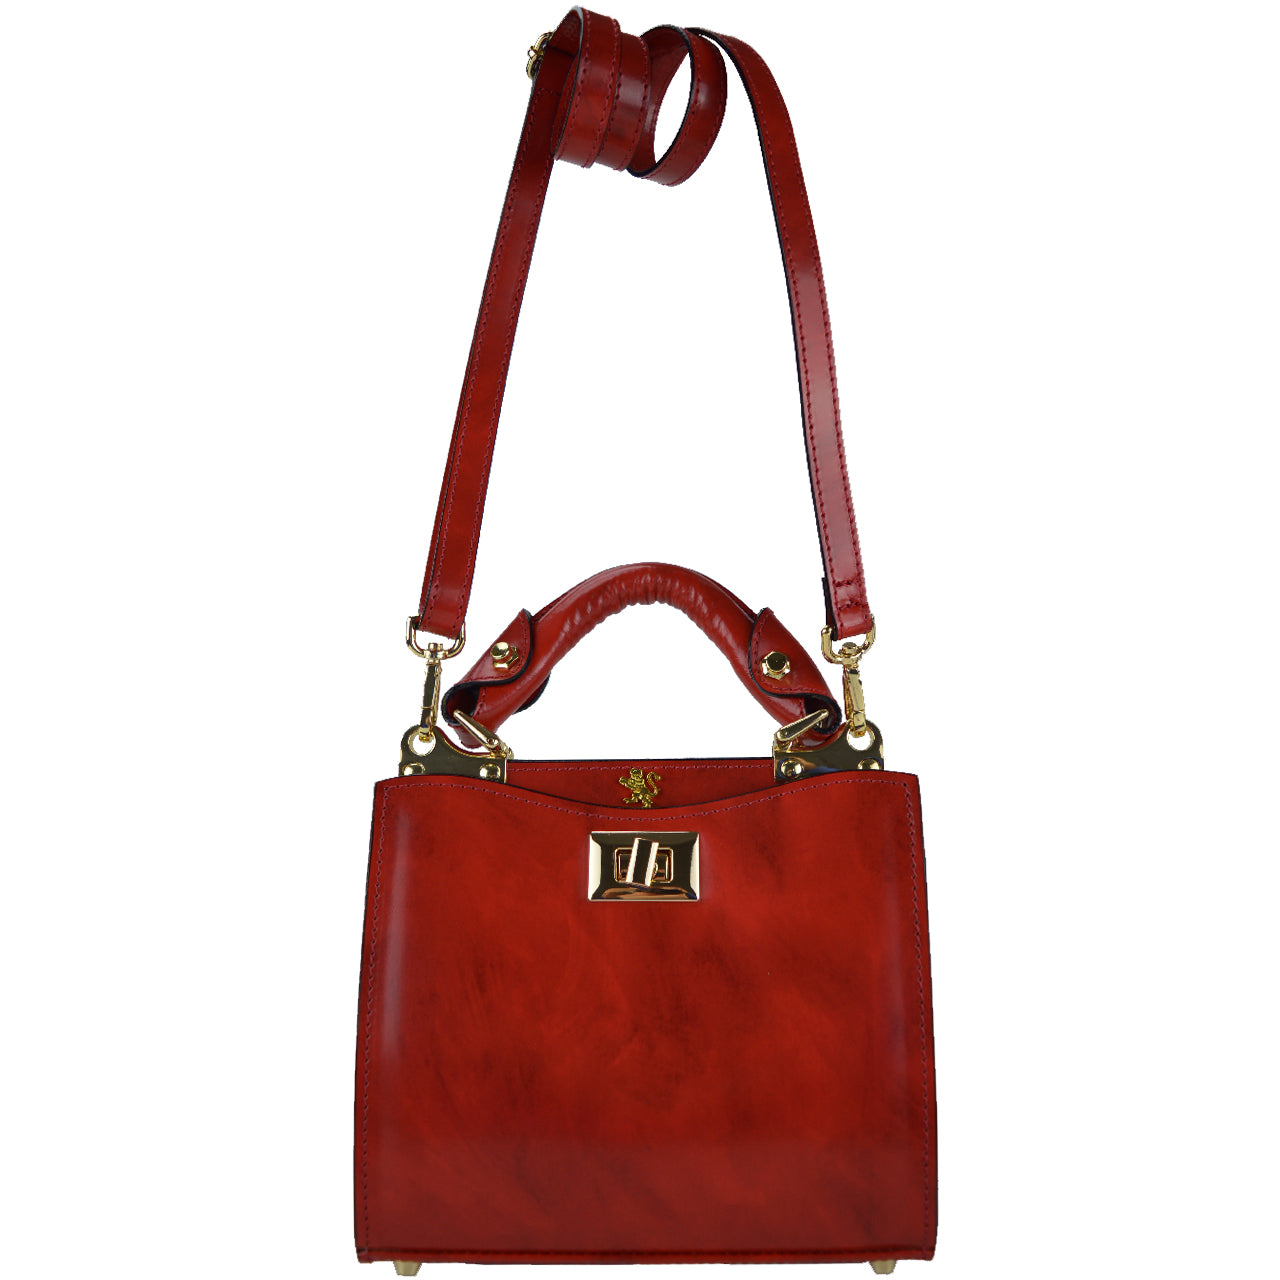 Pratesi Anna Maria Luisa de' Medici Small Lady Bag in genuine Italian leather - Brunelleschi Leather Cherry